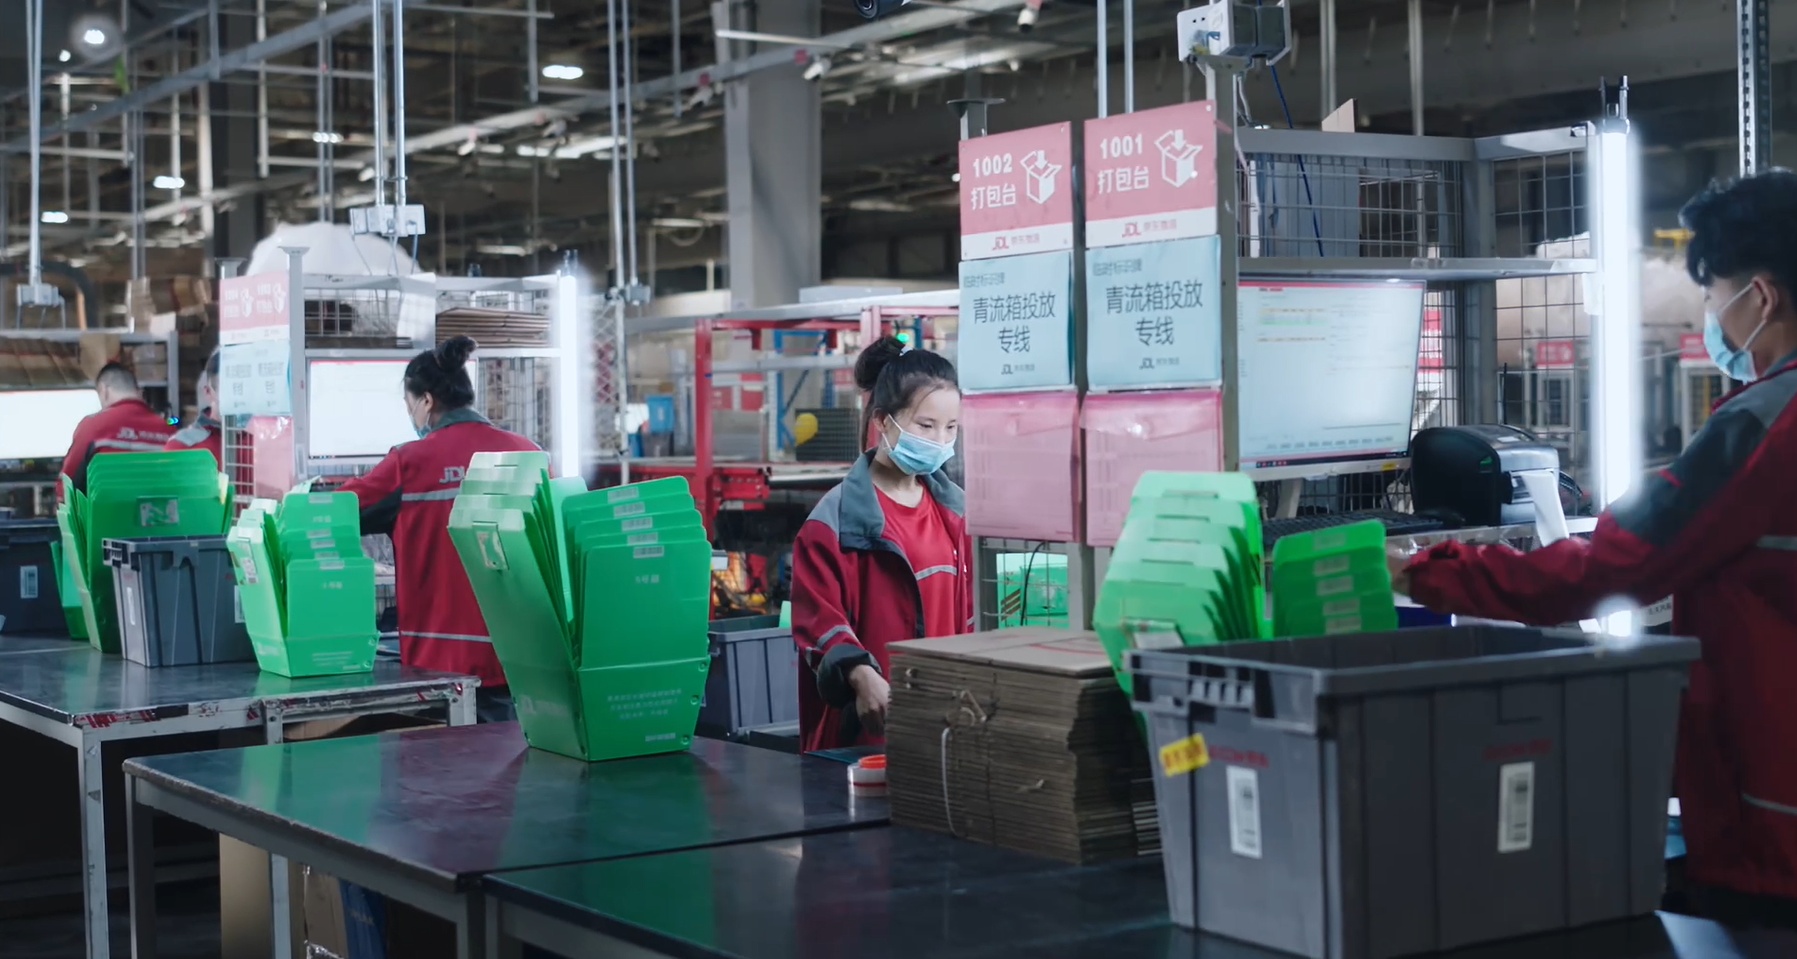 拼多多将在上海“五五购物节”期间投入40亿消费补贴